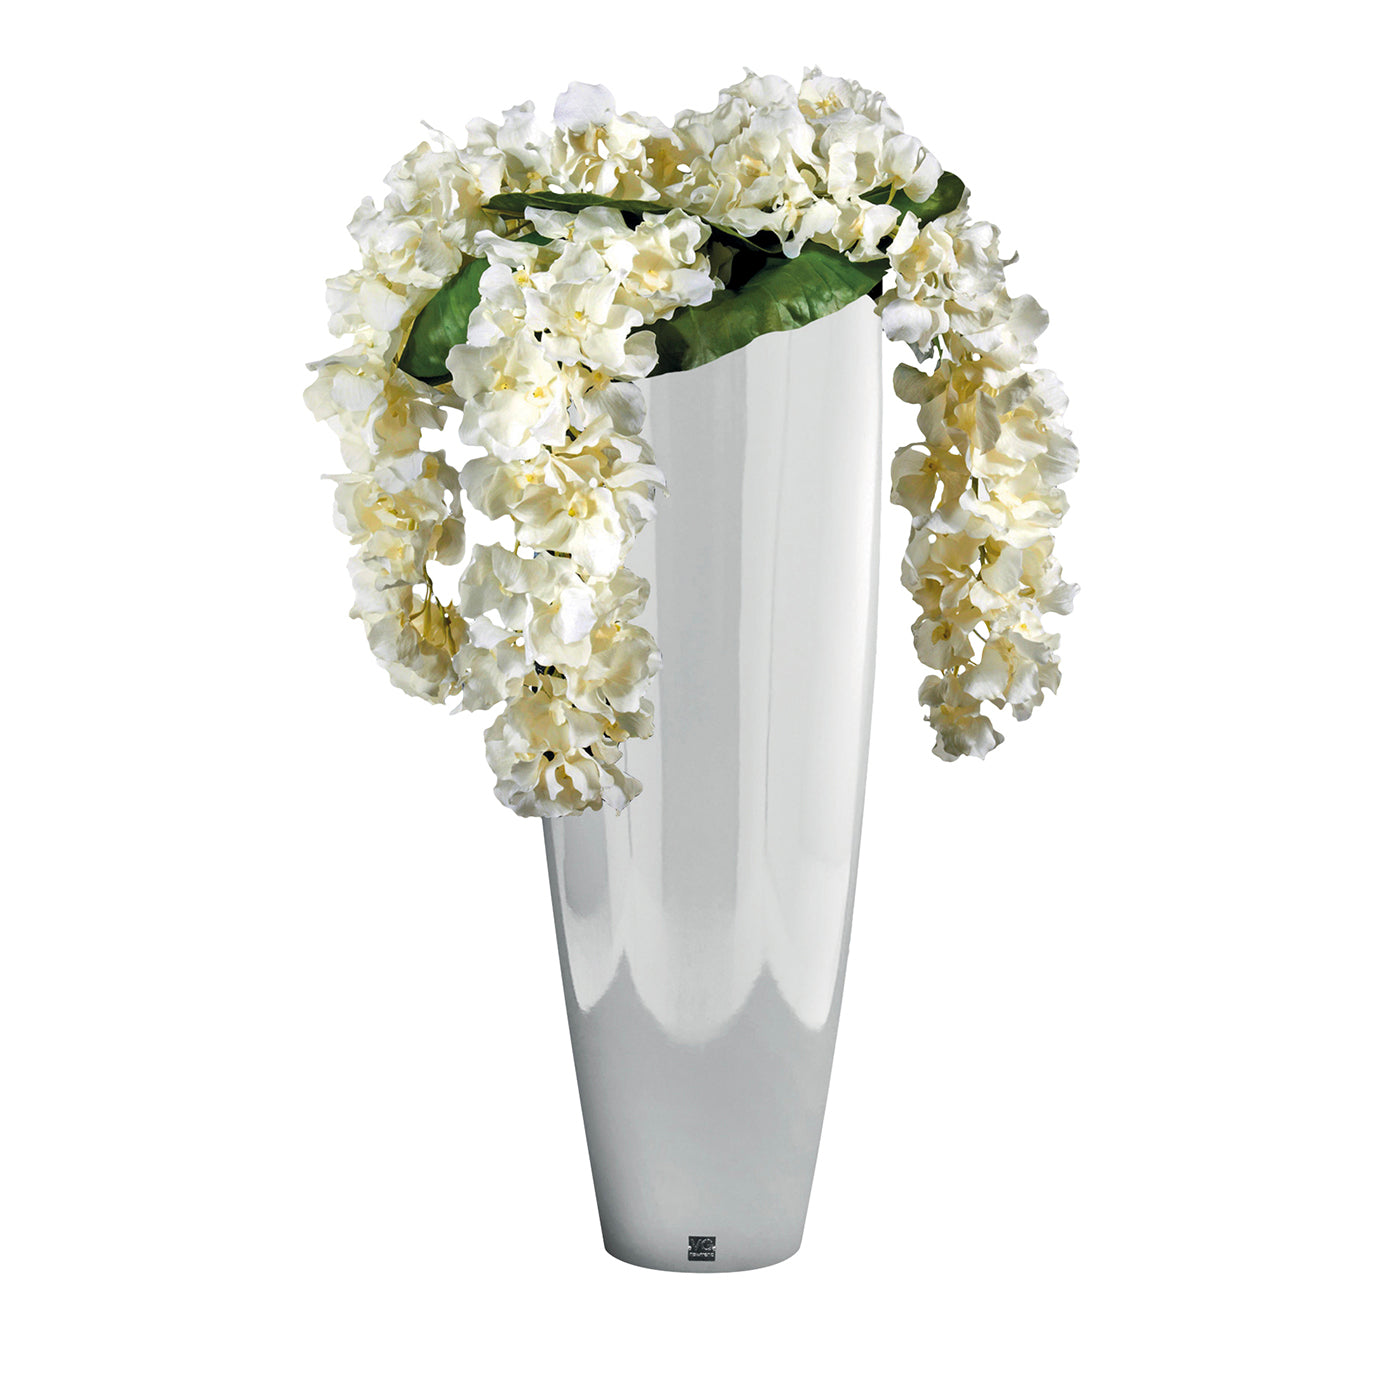 Composition florale Oslo avec vase blanc - Vue principale